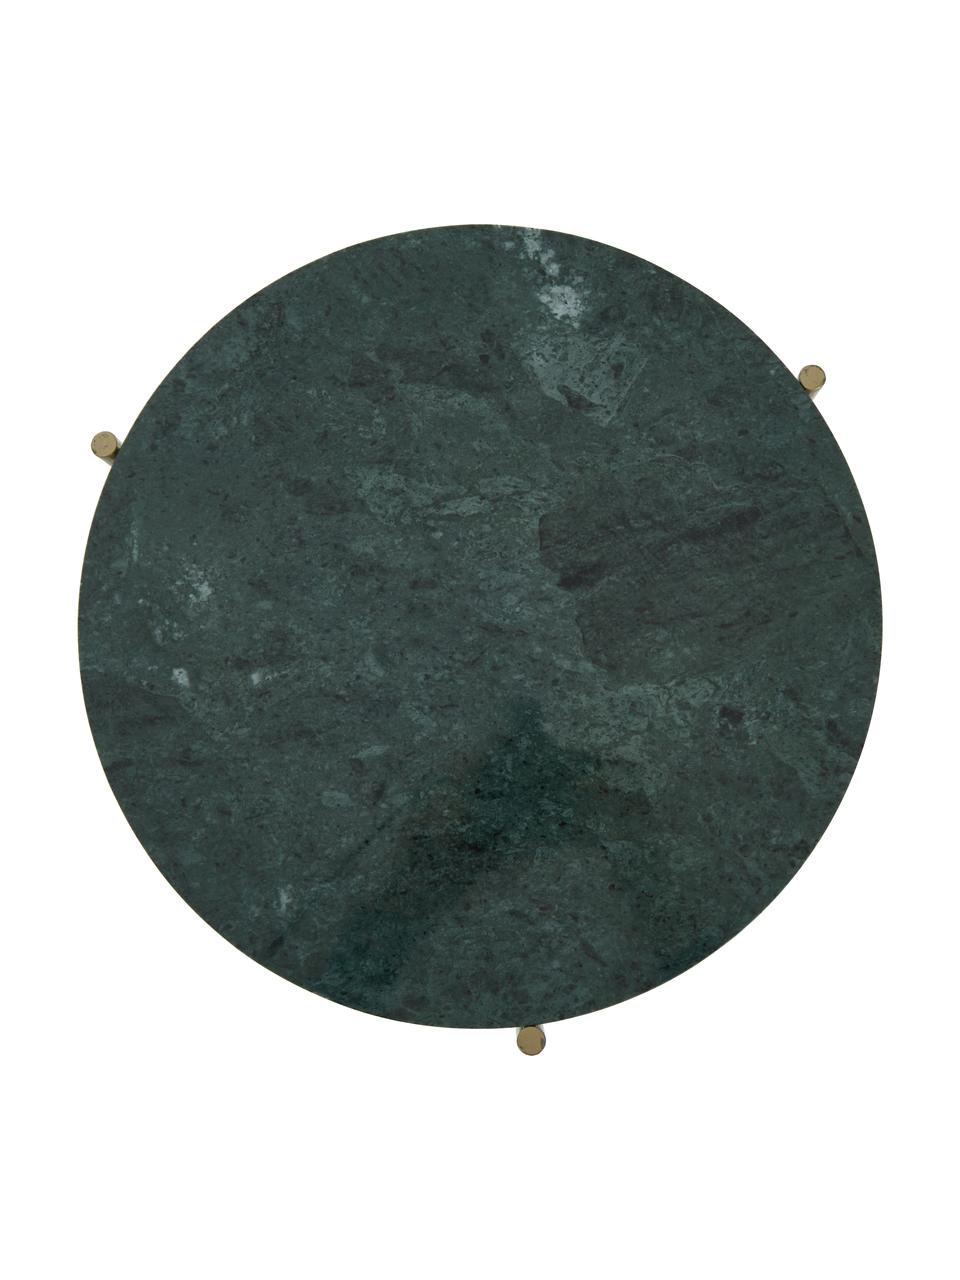 Runder Marmor-Beistelltisch Ella, Tischplatte: Marmor, Gestell: Metall, pulverbeschichtet, Grüner Marmor, Goldfarben, Ø 40 x H 50 cm